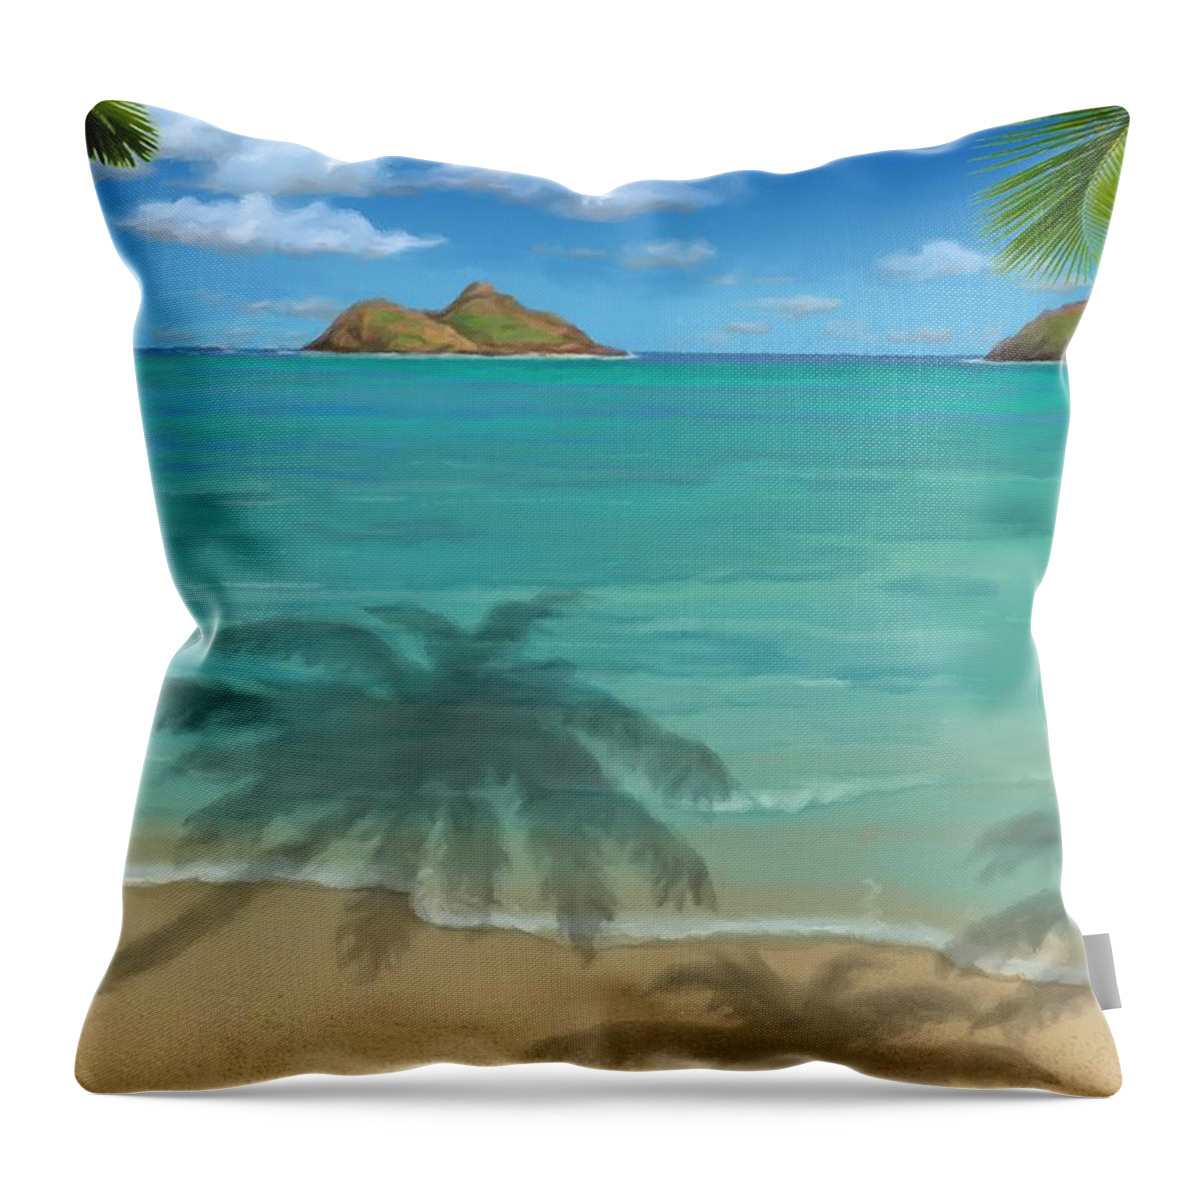 Lanikai Beach Throw Pillow featuring the painting Lanikai Beach by Stephen Jorgensen